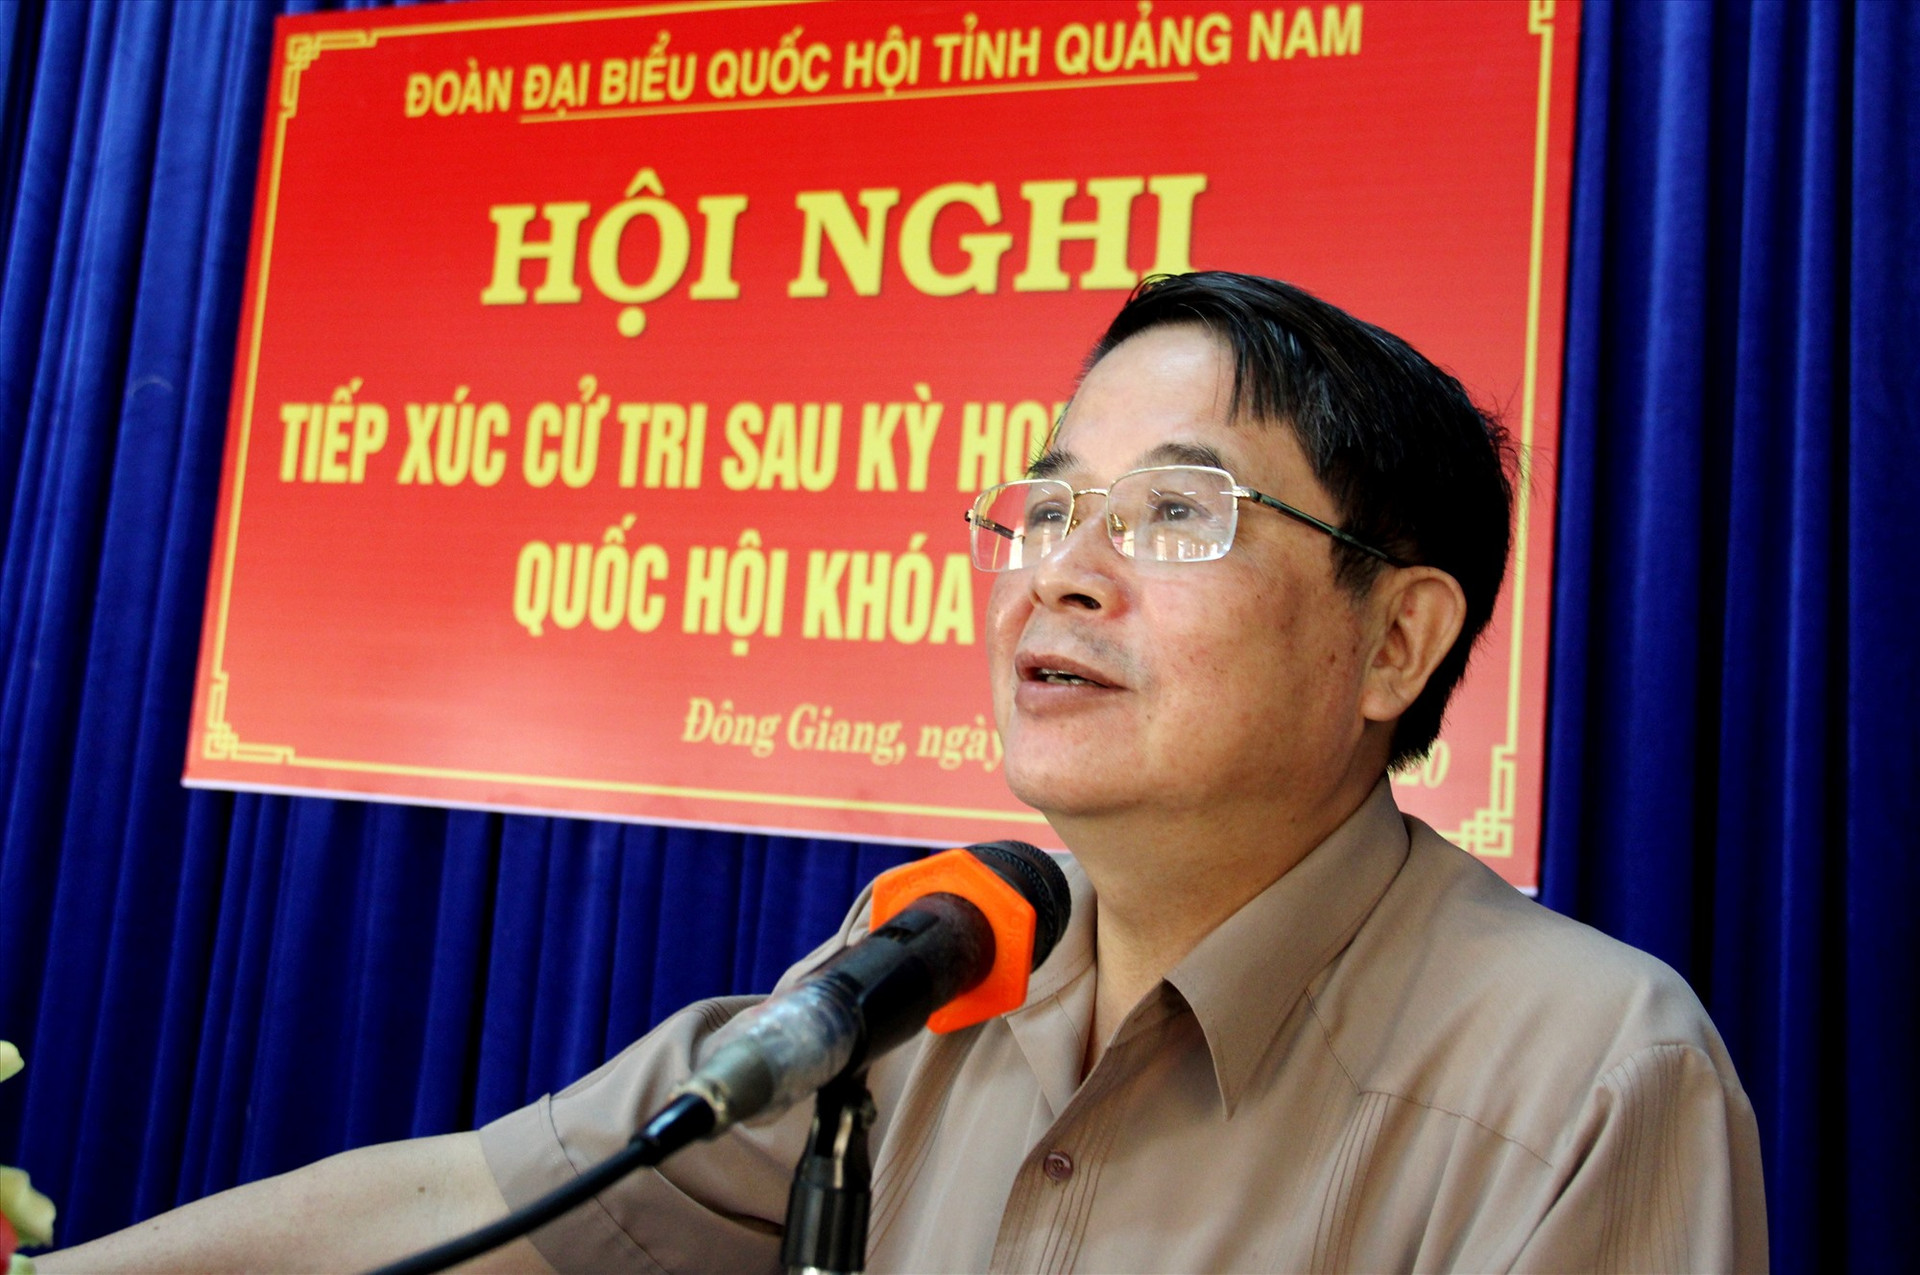 Đại biểu Nguyễn Đức Hải thông tin với cử tri nhiều nội dung sau kỳ họp thứ 9 (khóa XIV) của Quốc hội. Ảnh: A.N